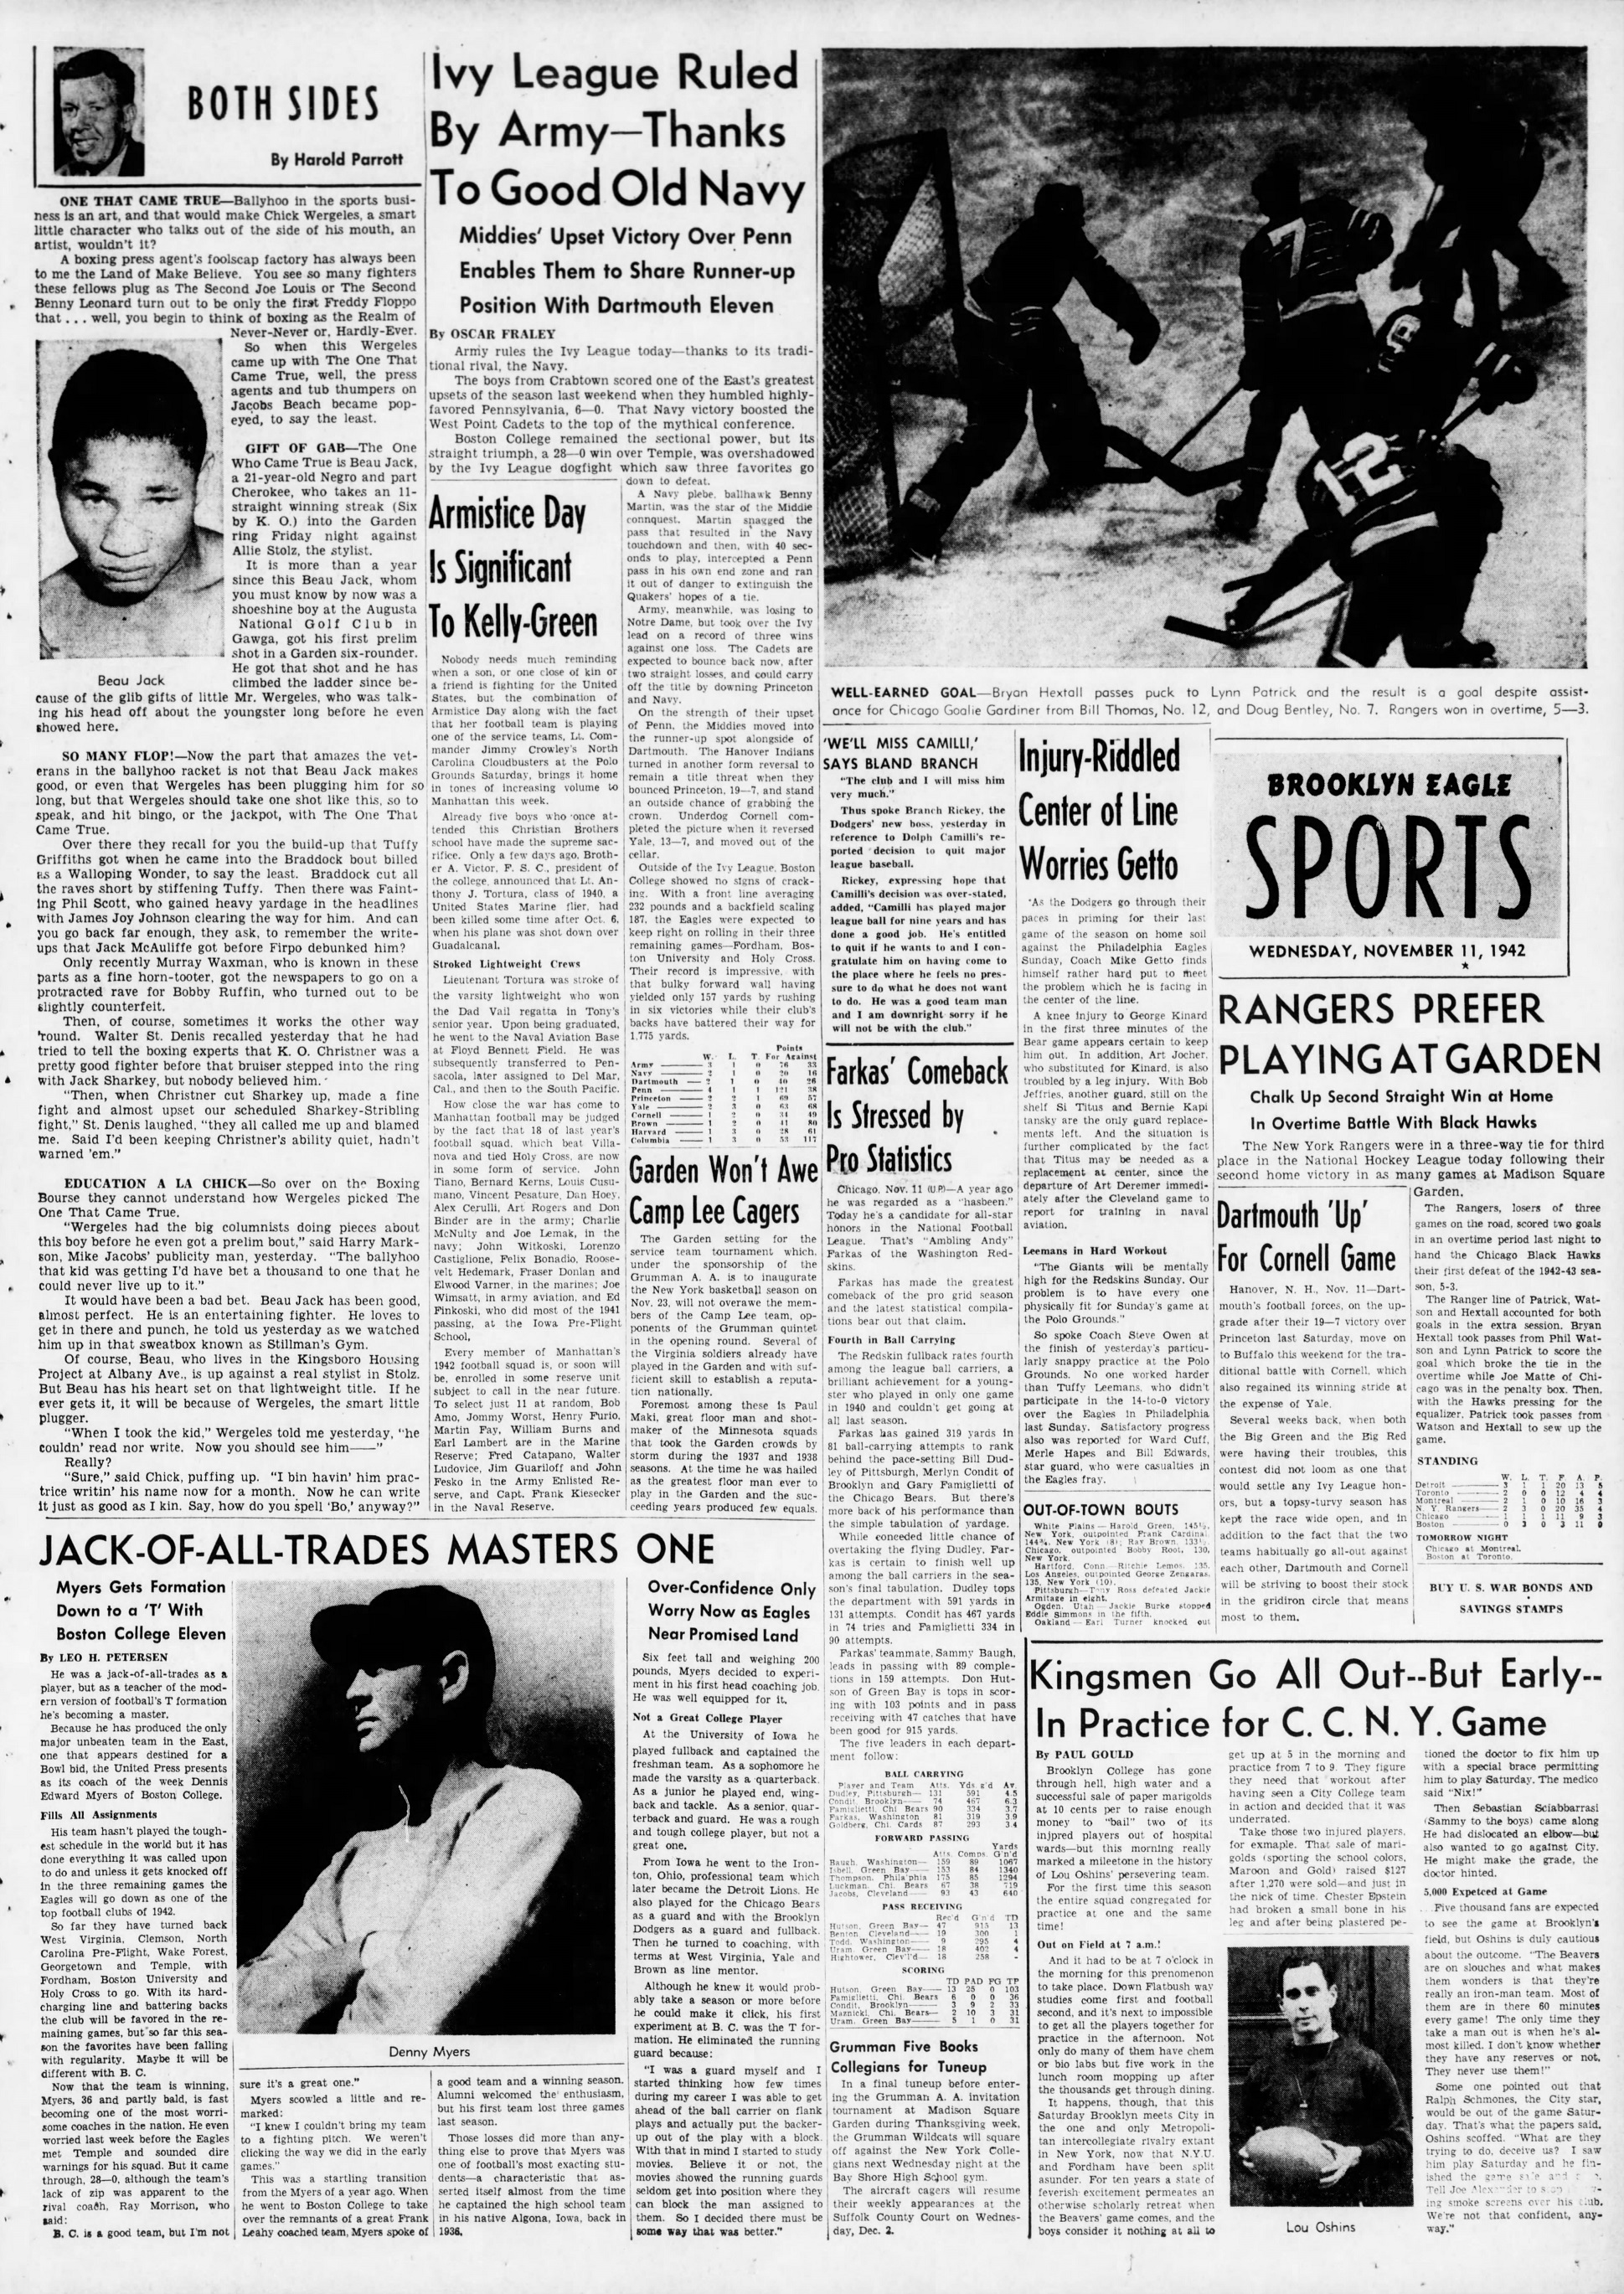 The_Brooklyn_Daily_Eagle_Wed__Nov_11__1942_(4).jpg